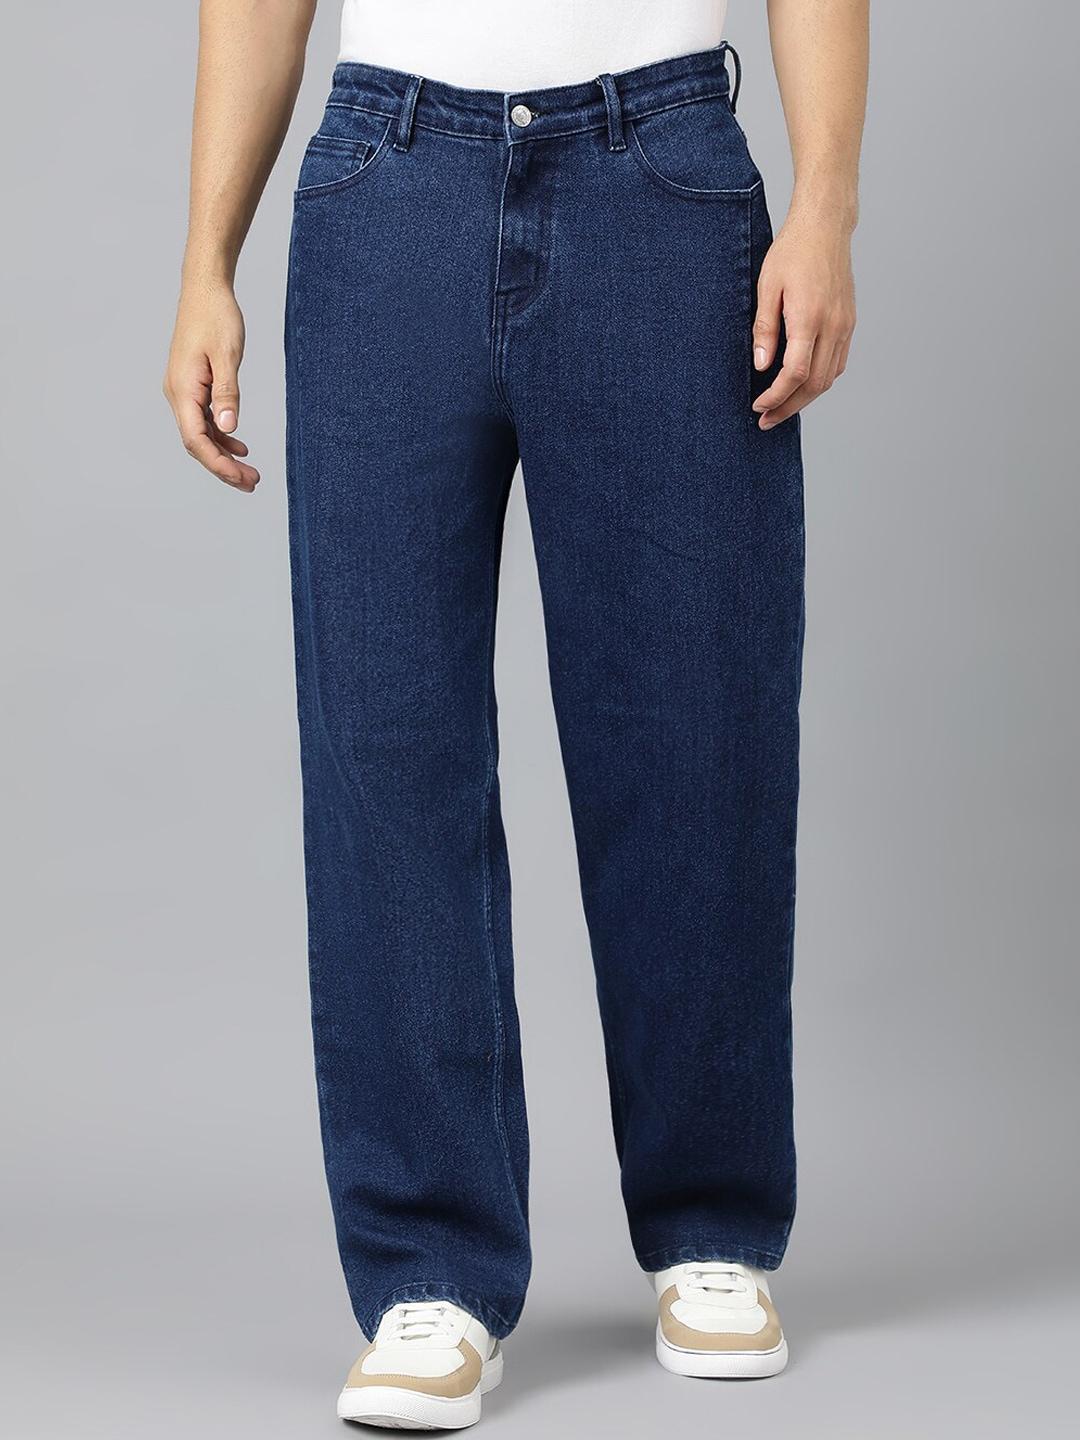 kotty-men-blue-jean-fit-low-rise-stretchable-jeans